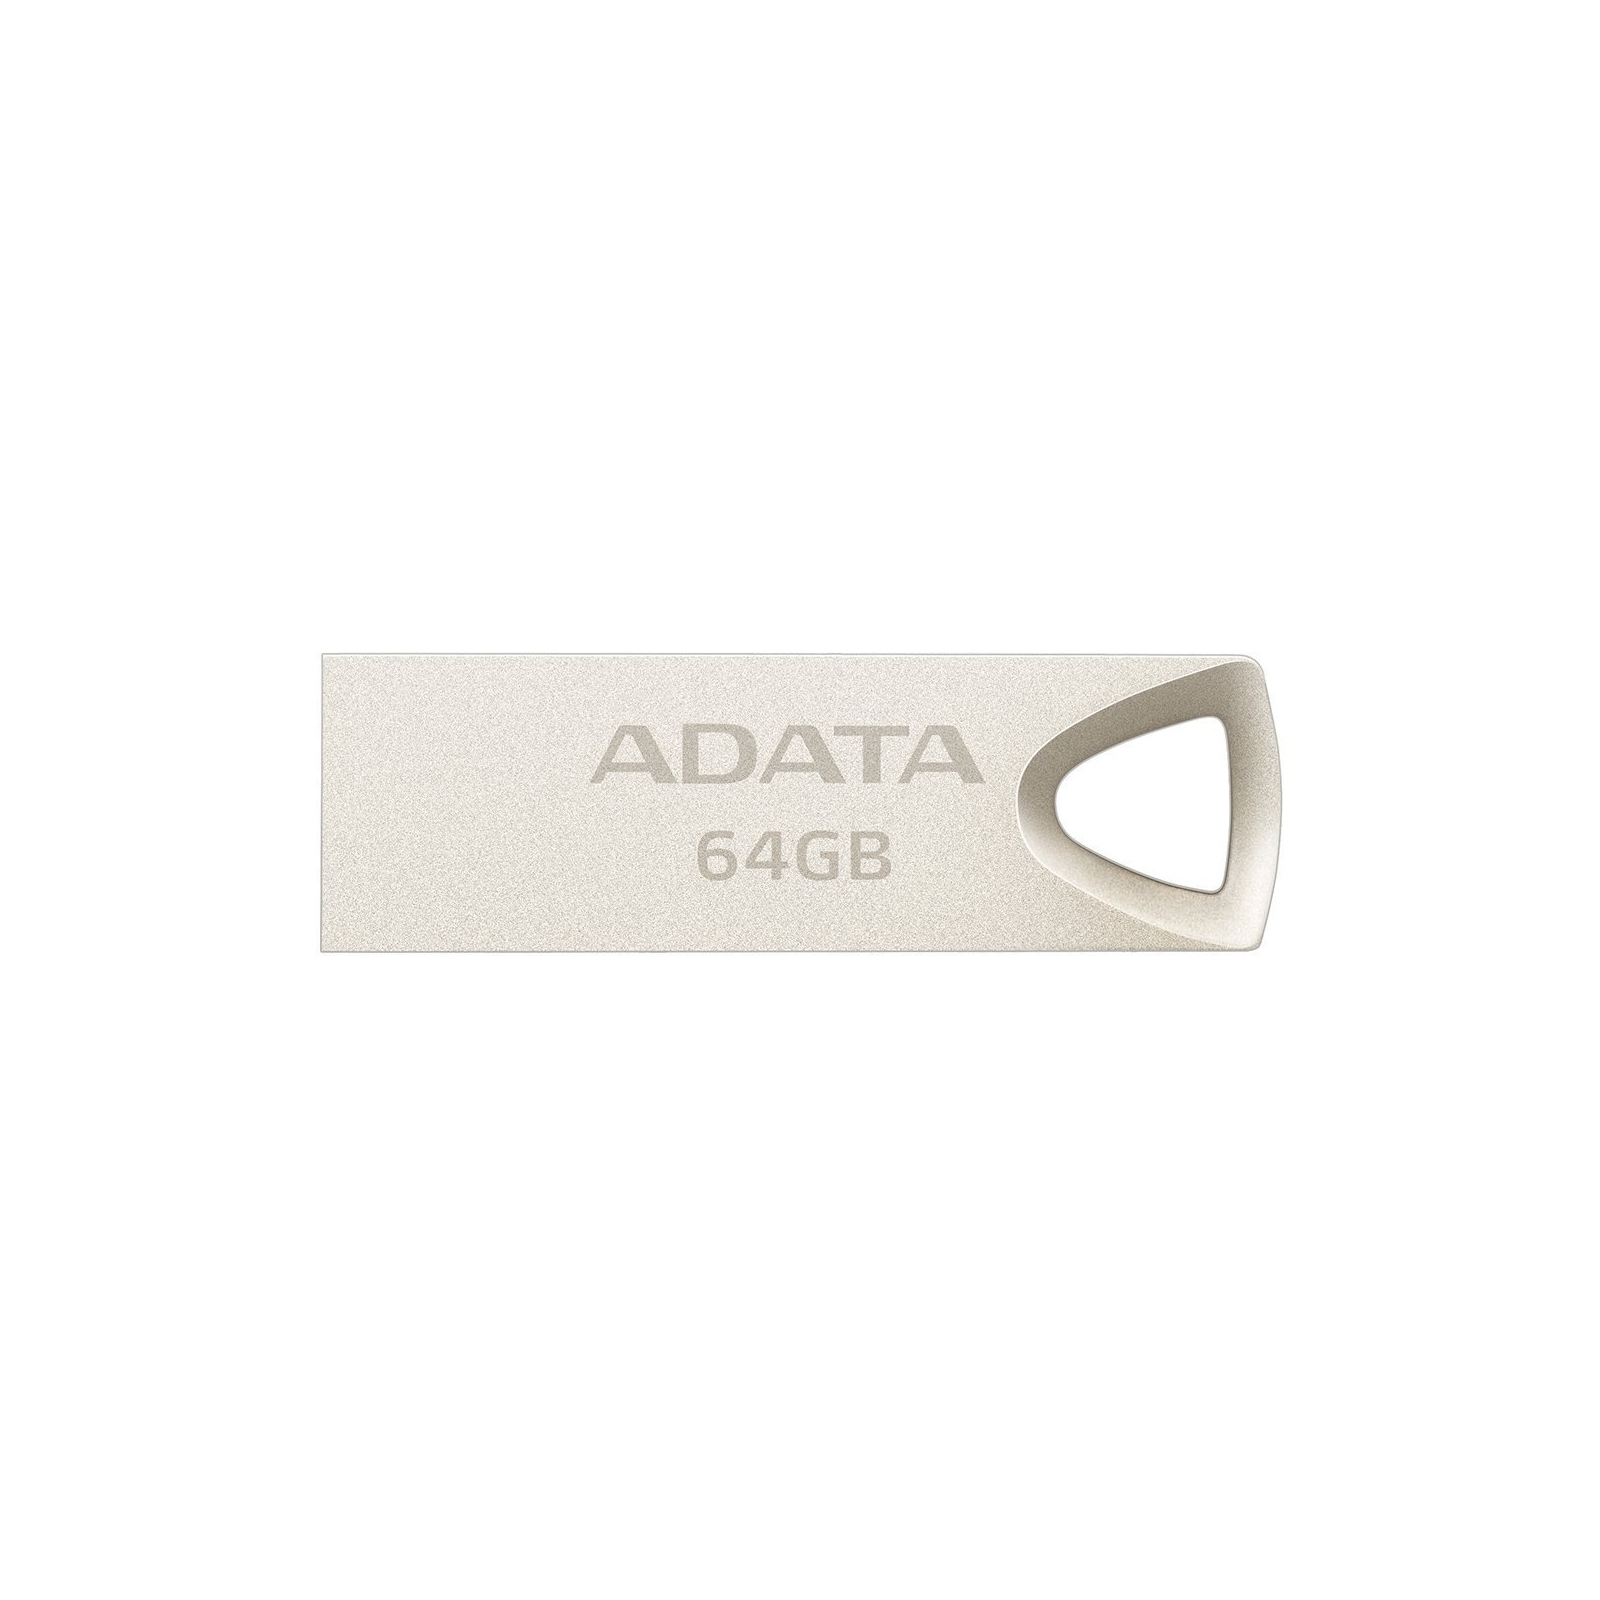 USB флеш накопичувач ADATA 32GB UV210 Metal Silver USB 2.0 (AUV210-32G-RGD)